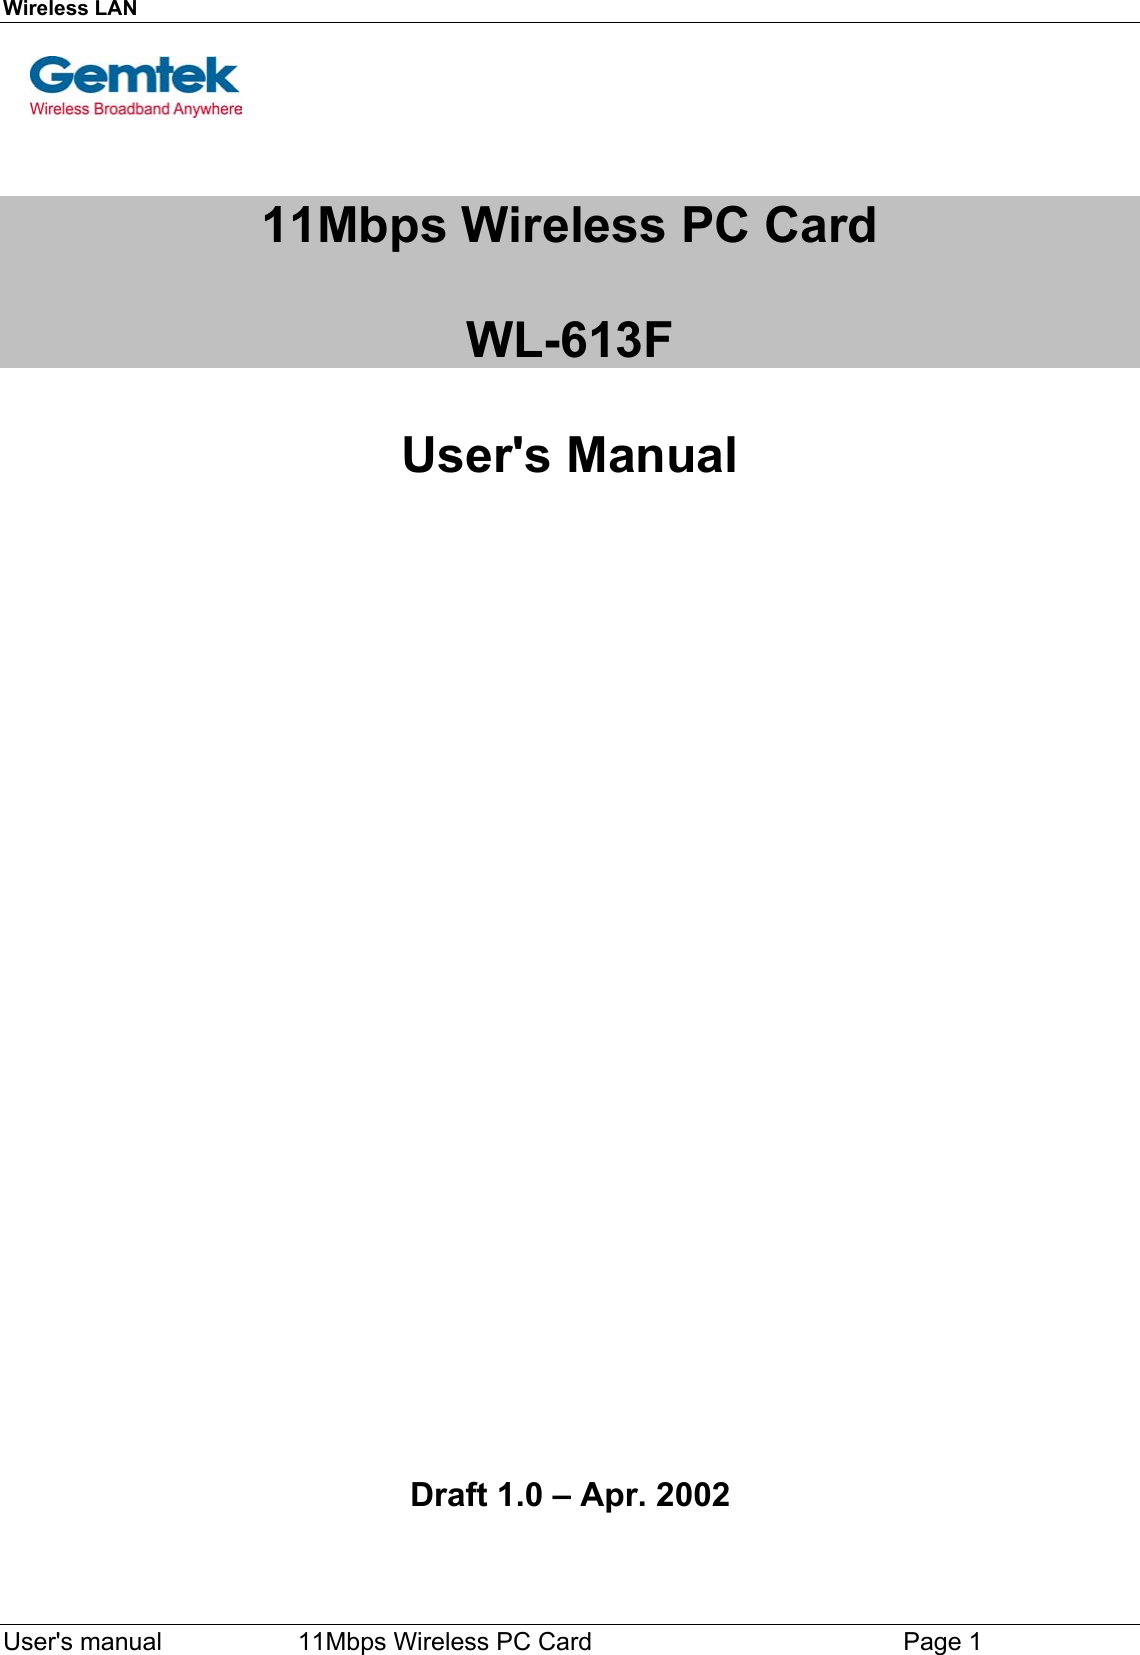 Wireless LAN  User&apos;s manual        11Mbps Wireless PC Card Page 111Mbps Wireless PC CardWL-613FUser&apos;s Manual   Draft 1.0 – Apr. 2002